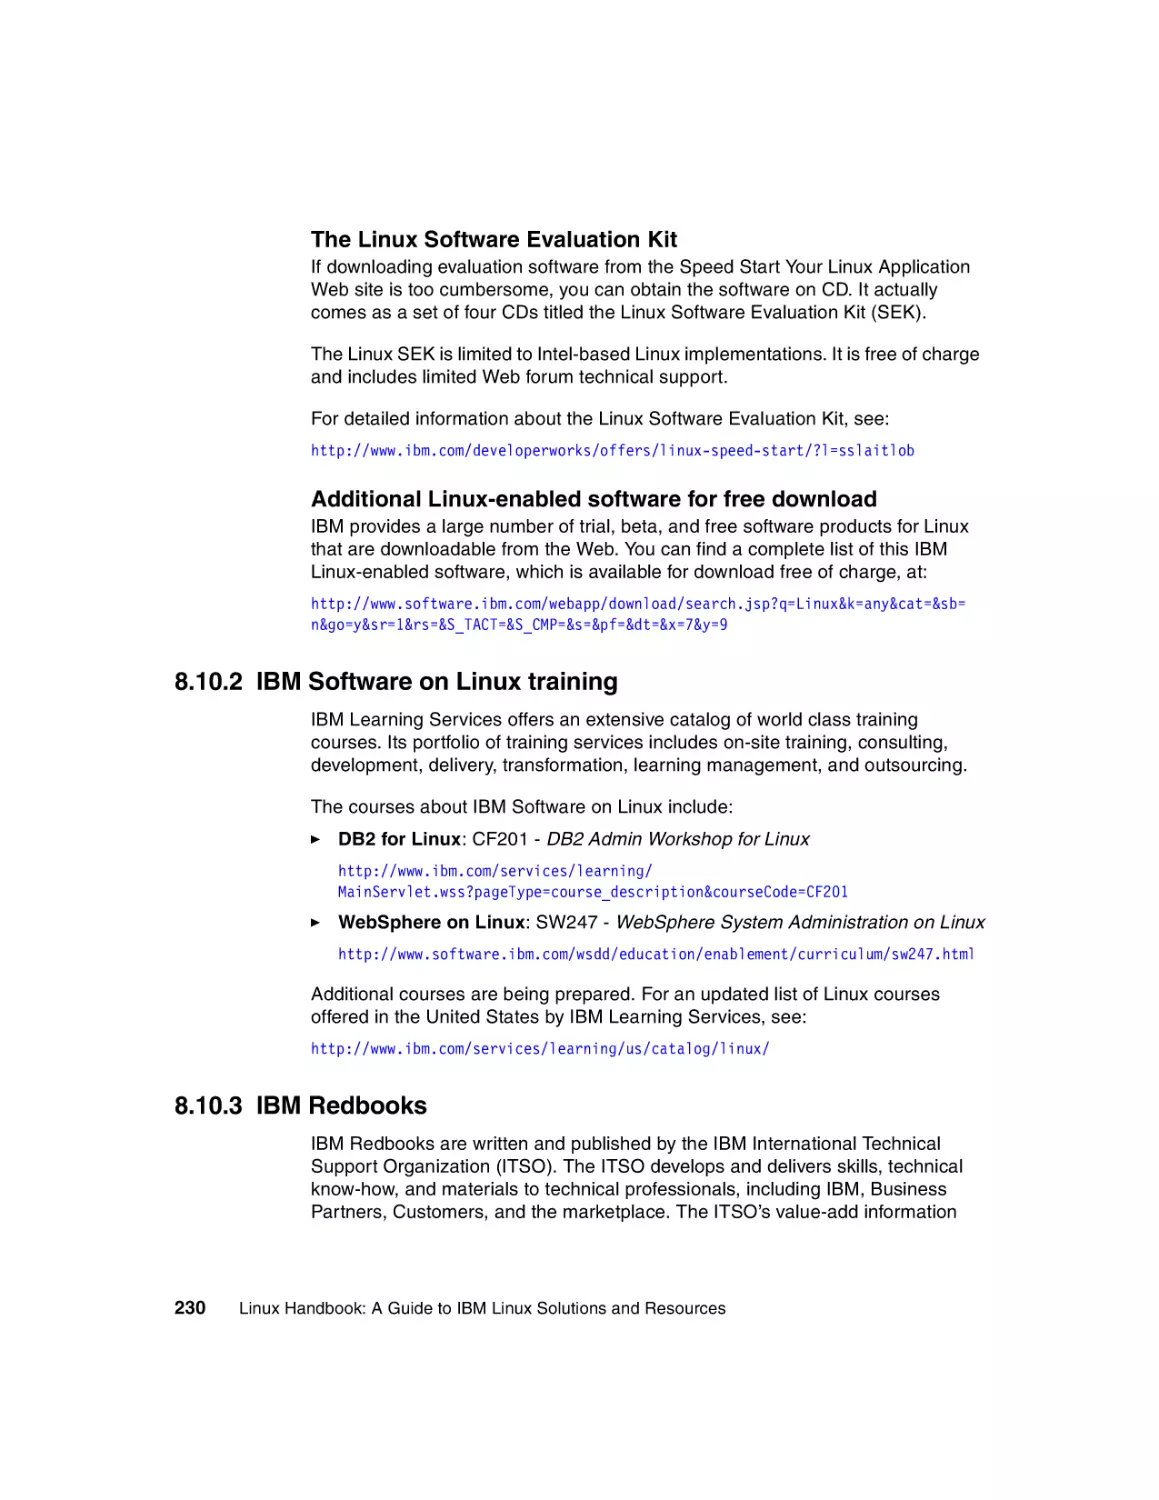 8.10.2 IBM Software on Linux training
8.10.3 IBM Redbooks